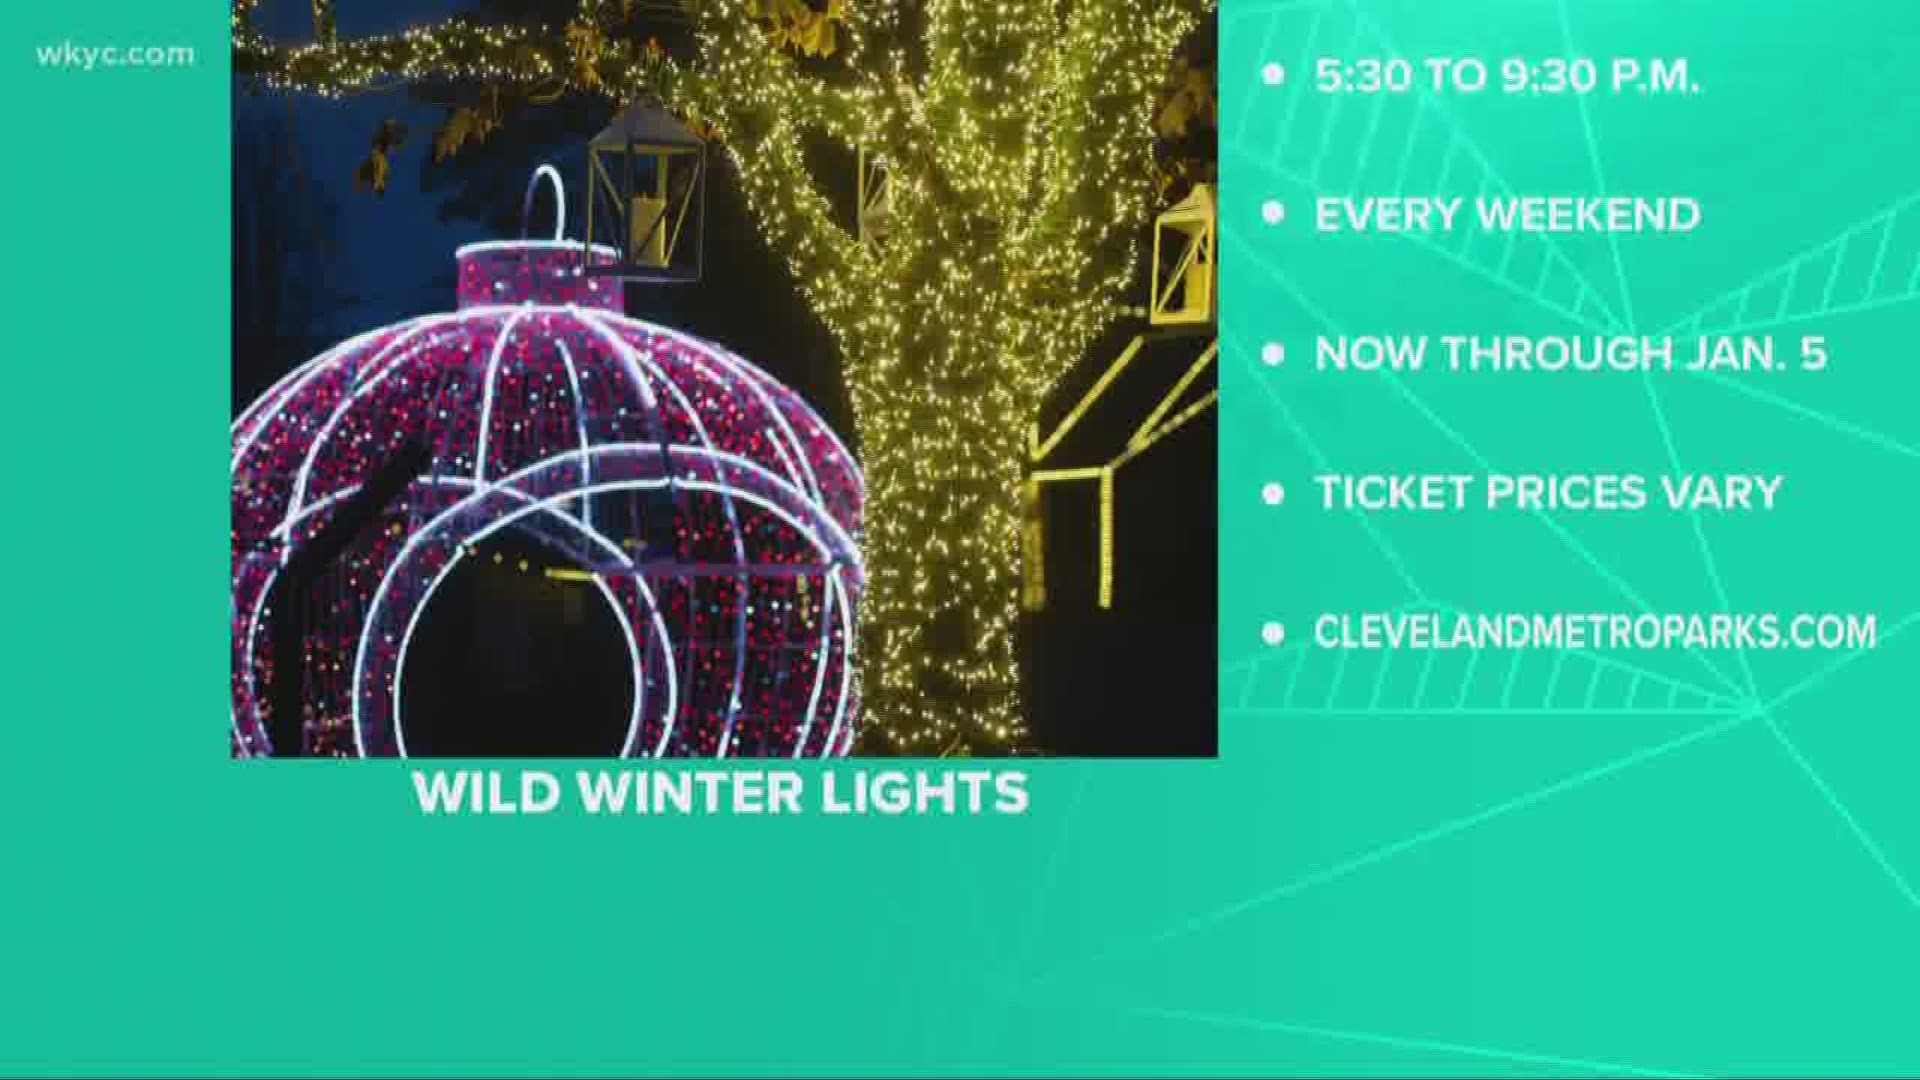 Wild Winter Lights Still Underway at Cleveland Metroparks Zoo